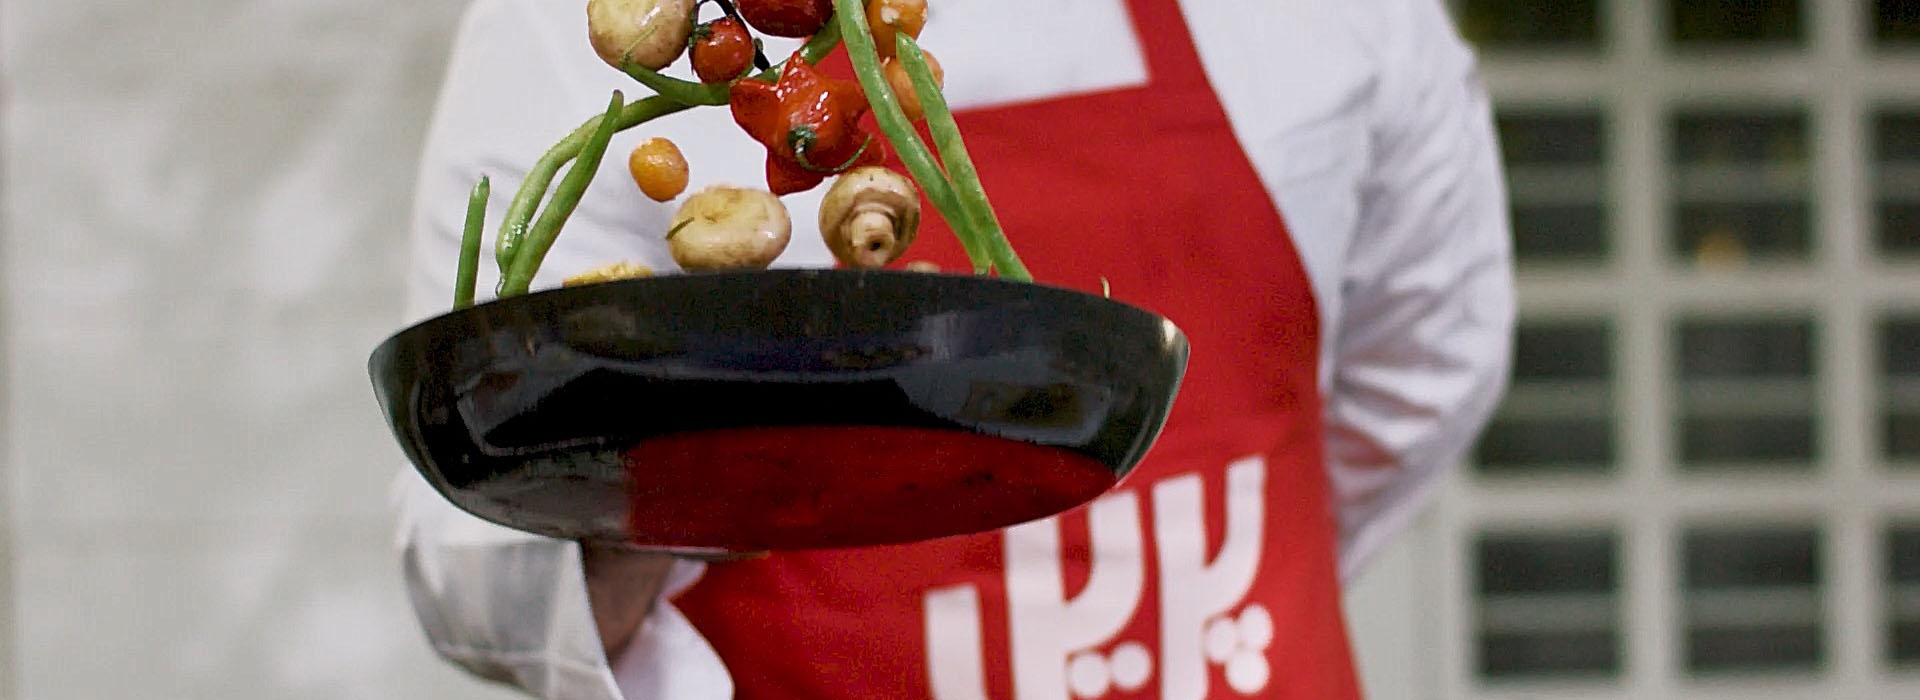 سرآشپز کمپین «با هم لذت ببریم» پریل در حال سرخ کردن سبزیجات در ماهیتابه با پیشبند قرمز پریل